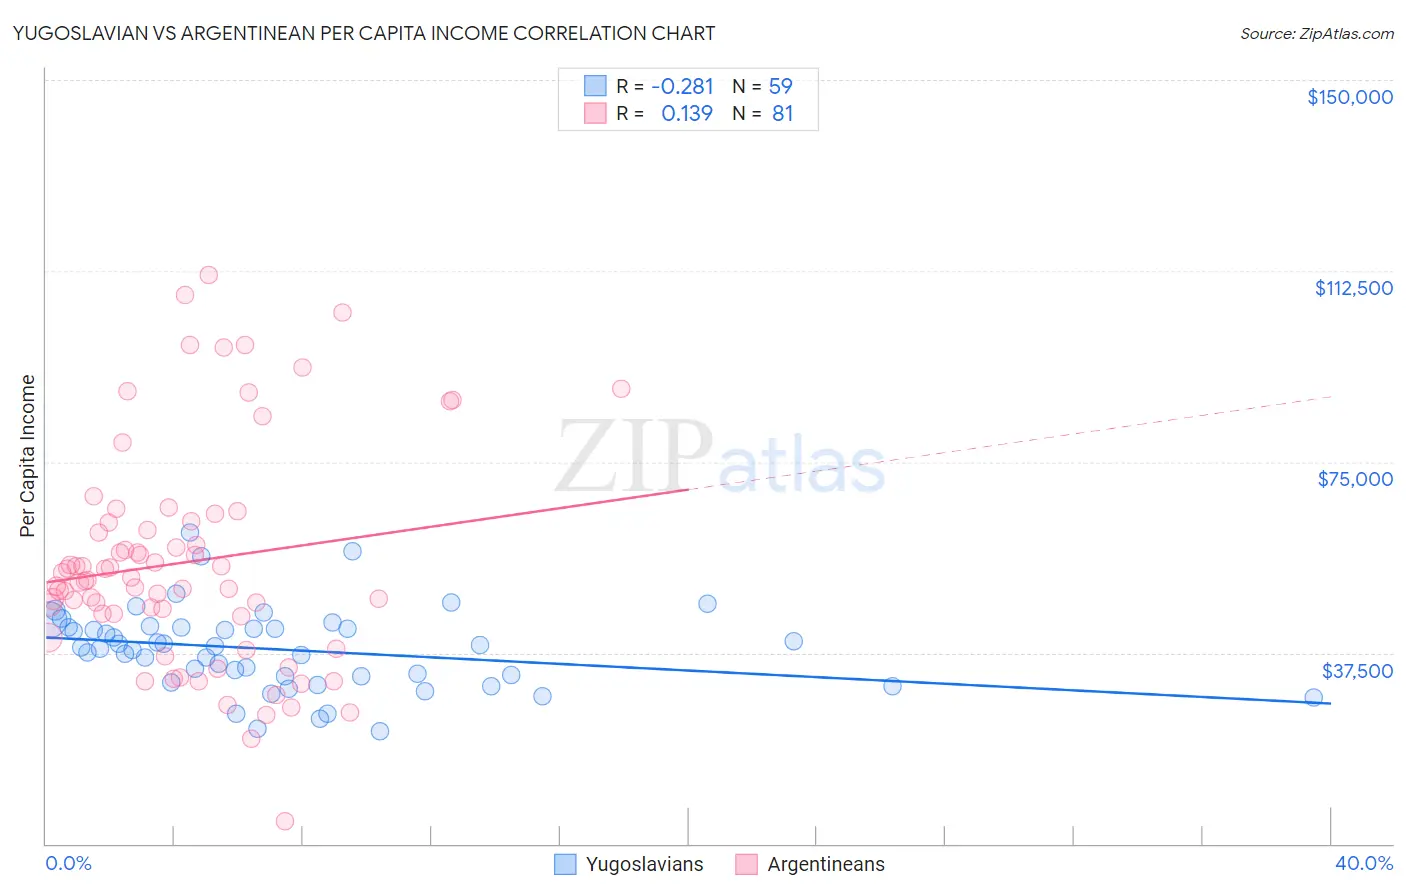 Yugoslavian vs Argentinean Per Capita Income